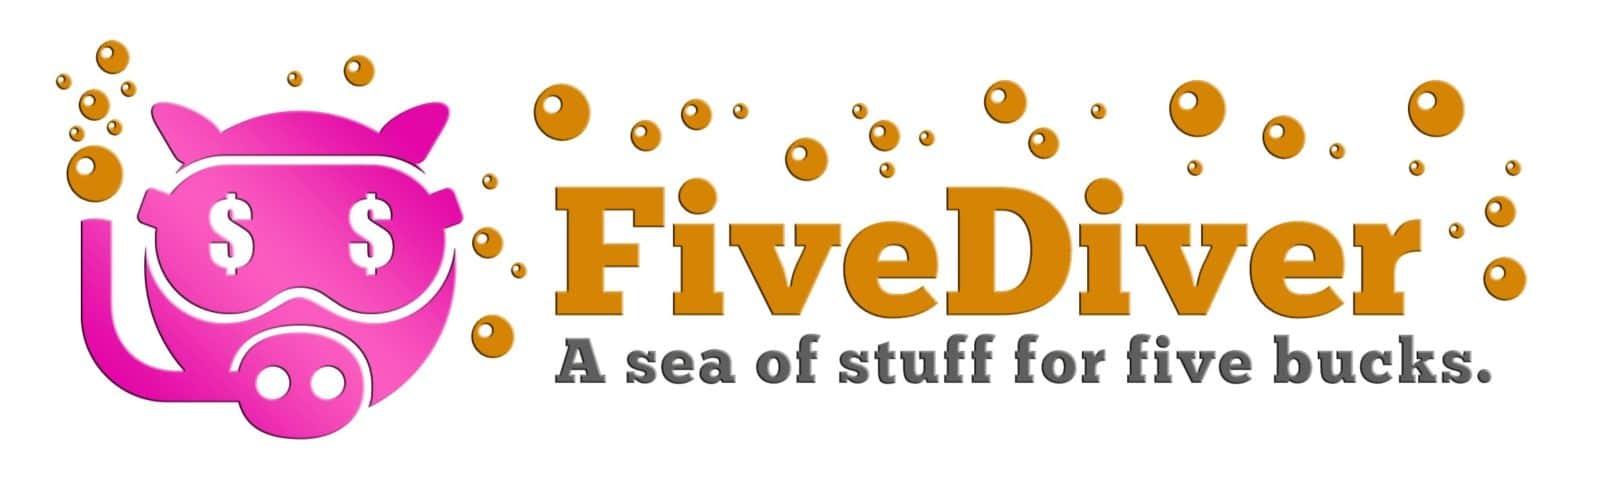 Five Diver